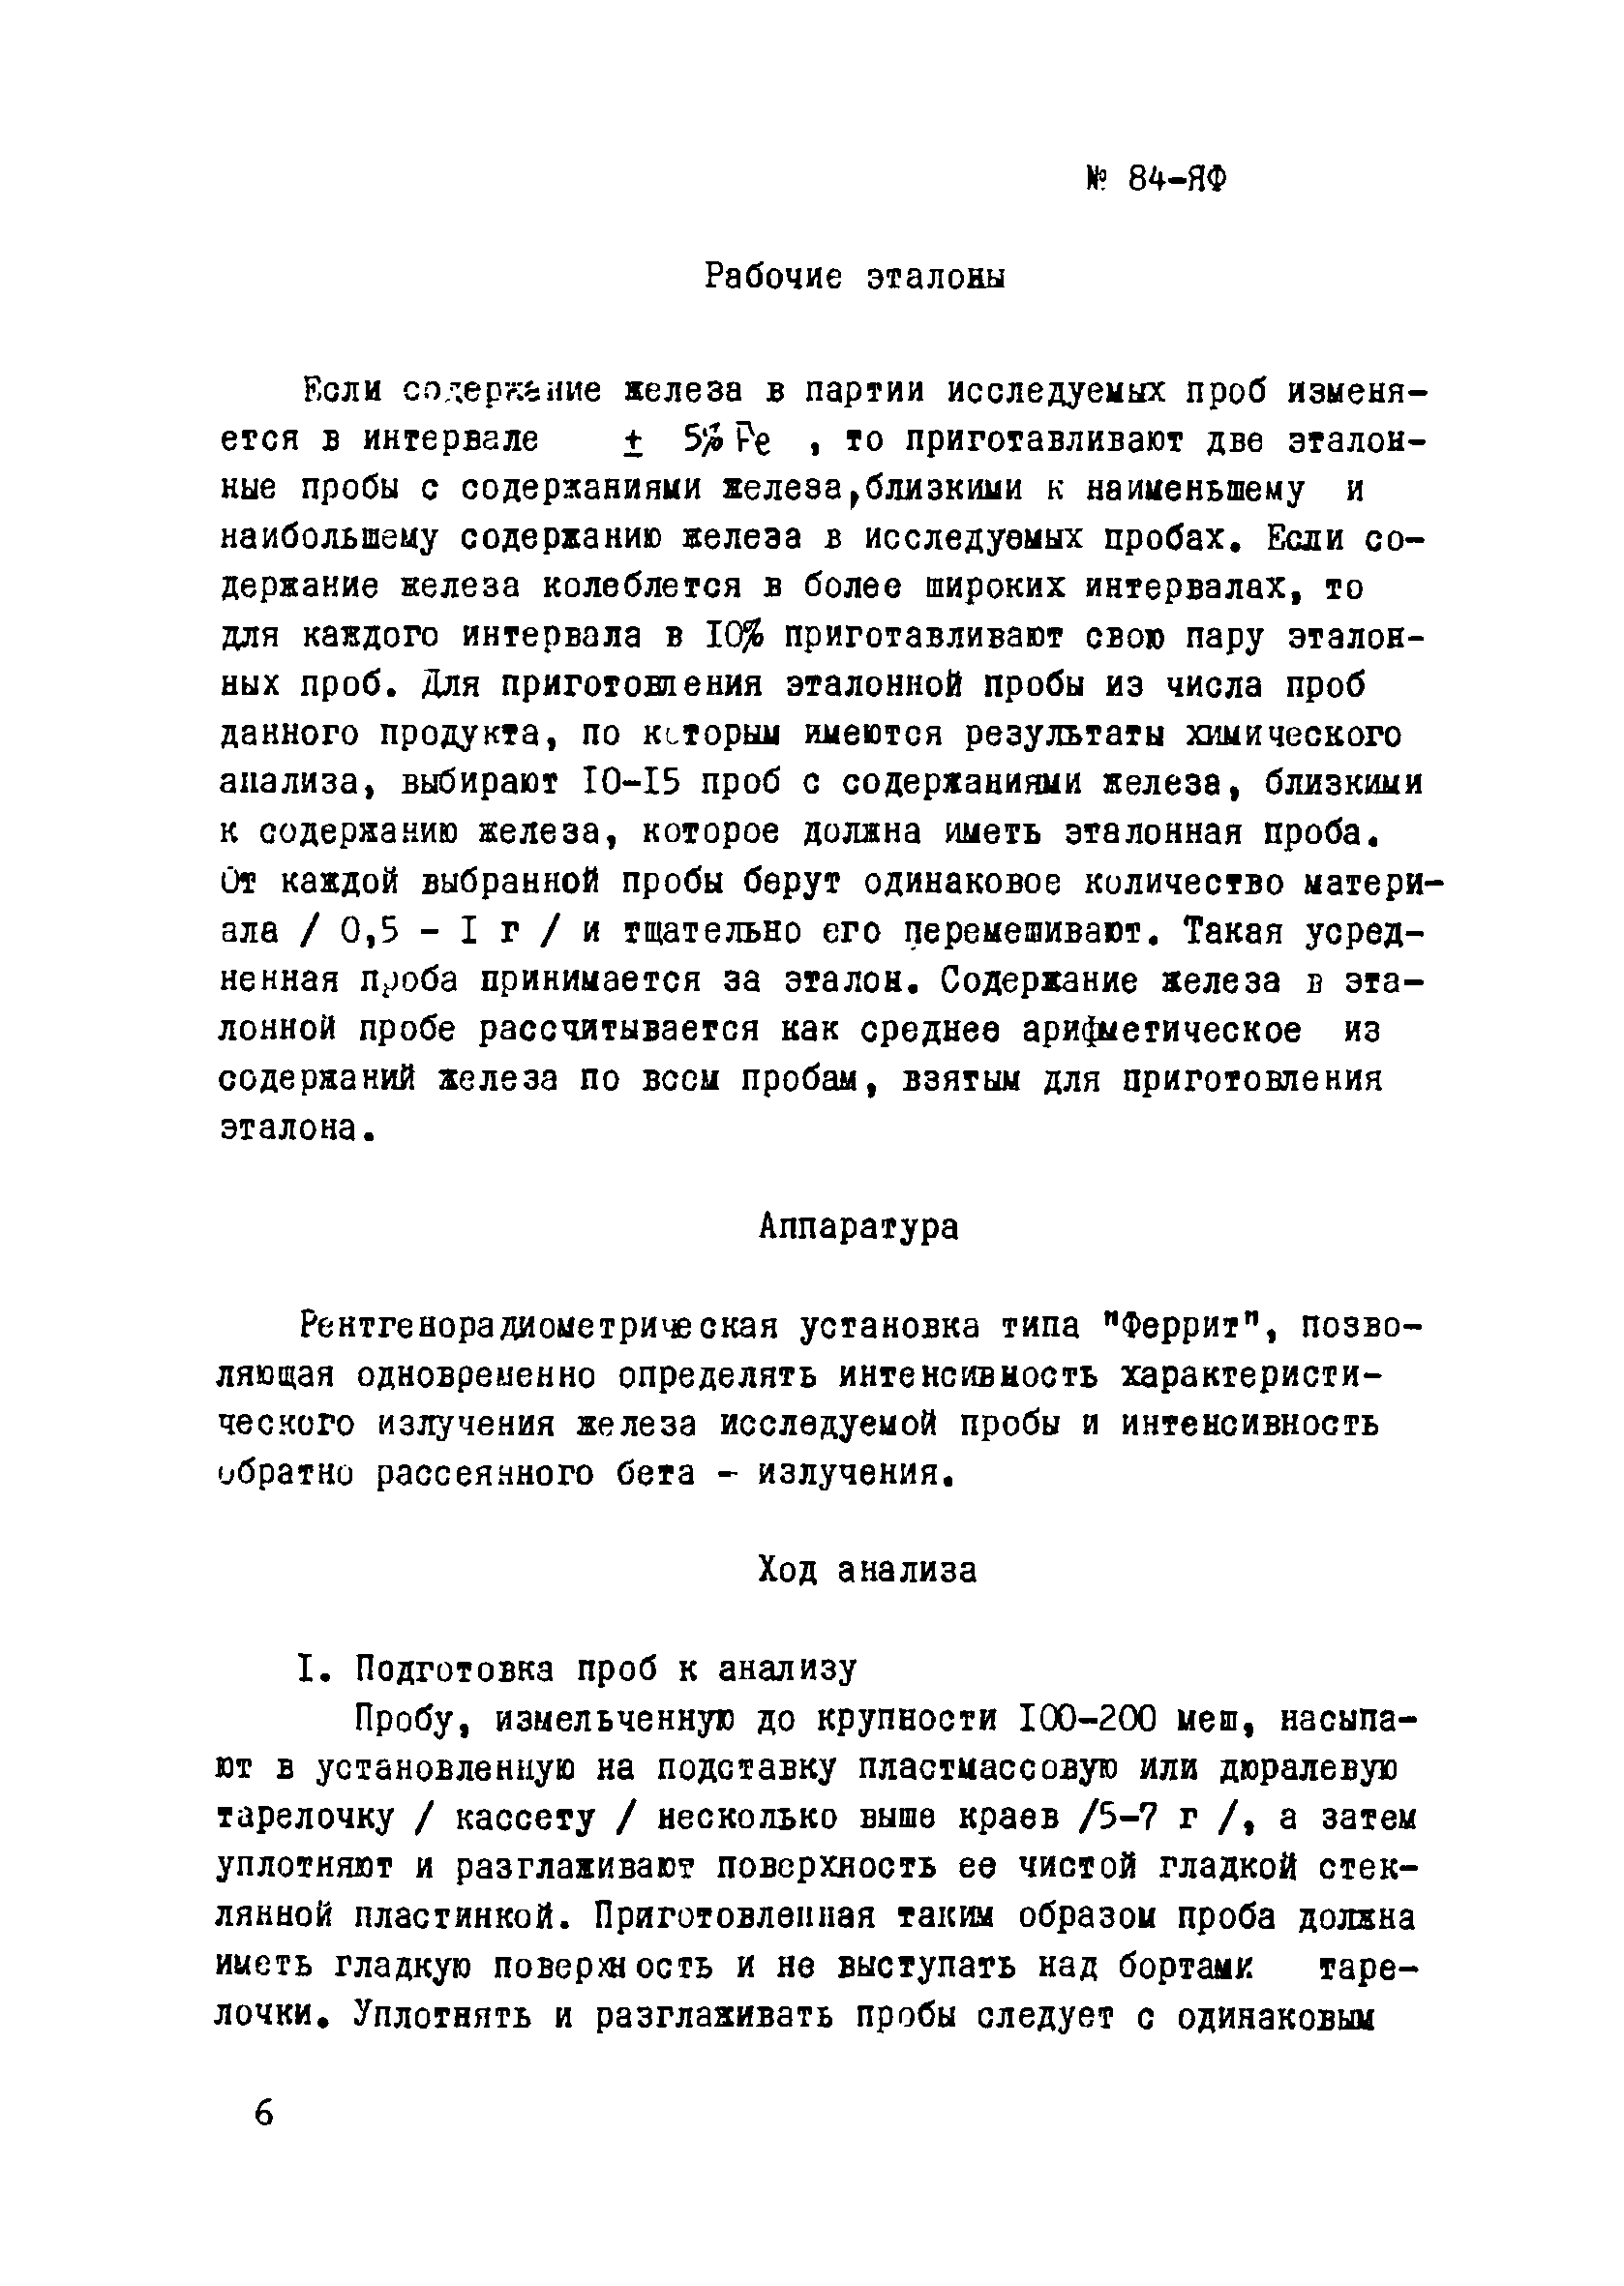 Инструкция НСАМ 84-ЯФ